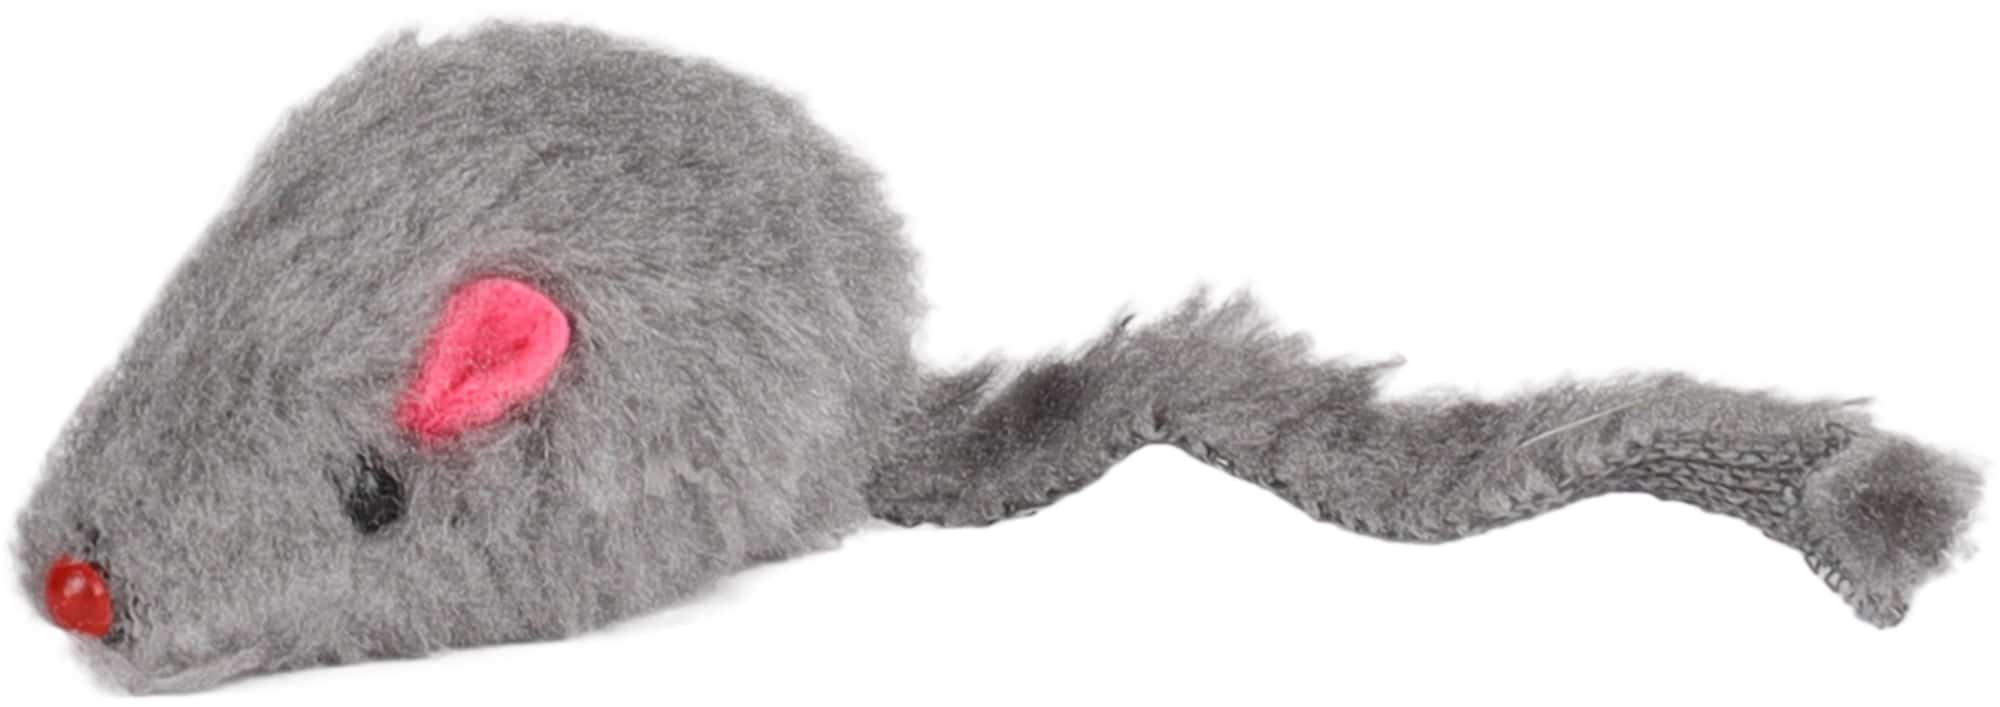 Igrača za mačke krznena miška siva 5cm 1 kos Flamingo